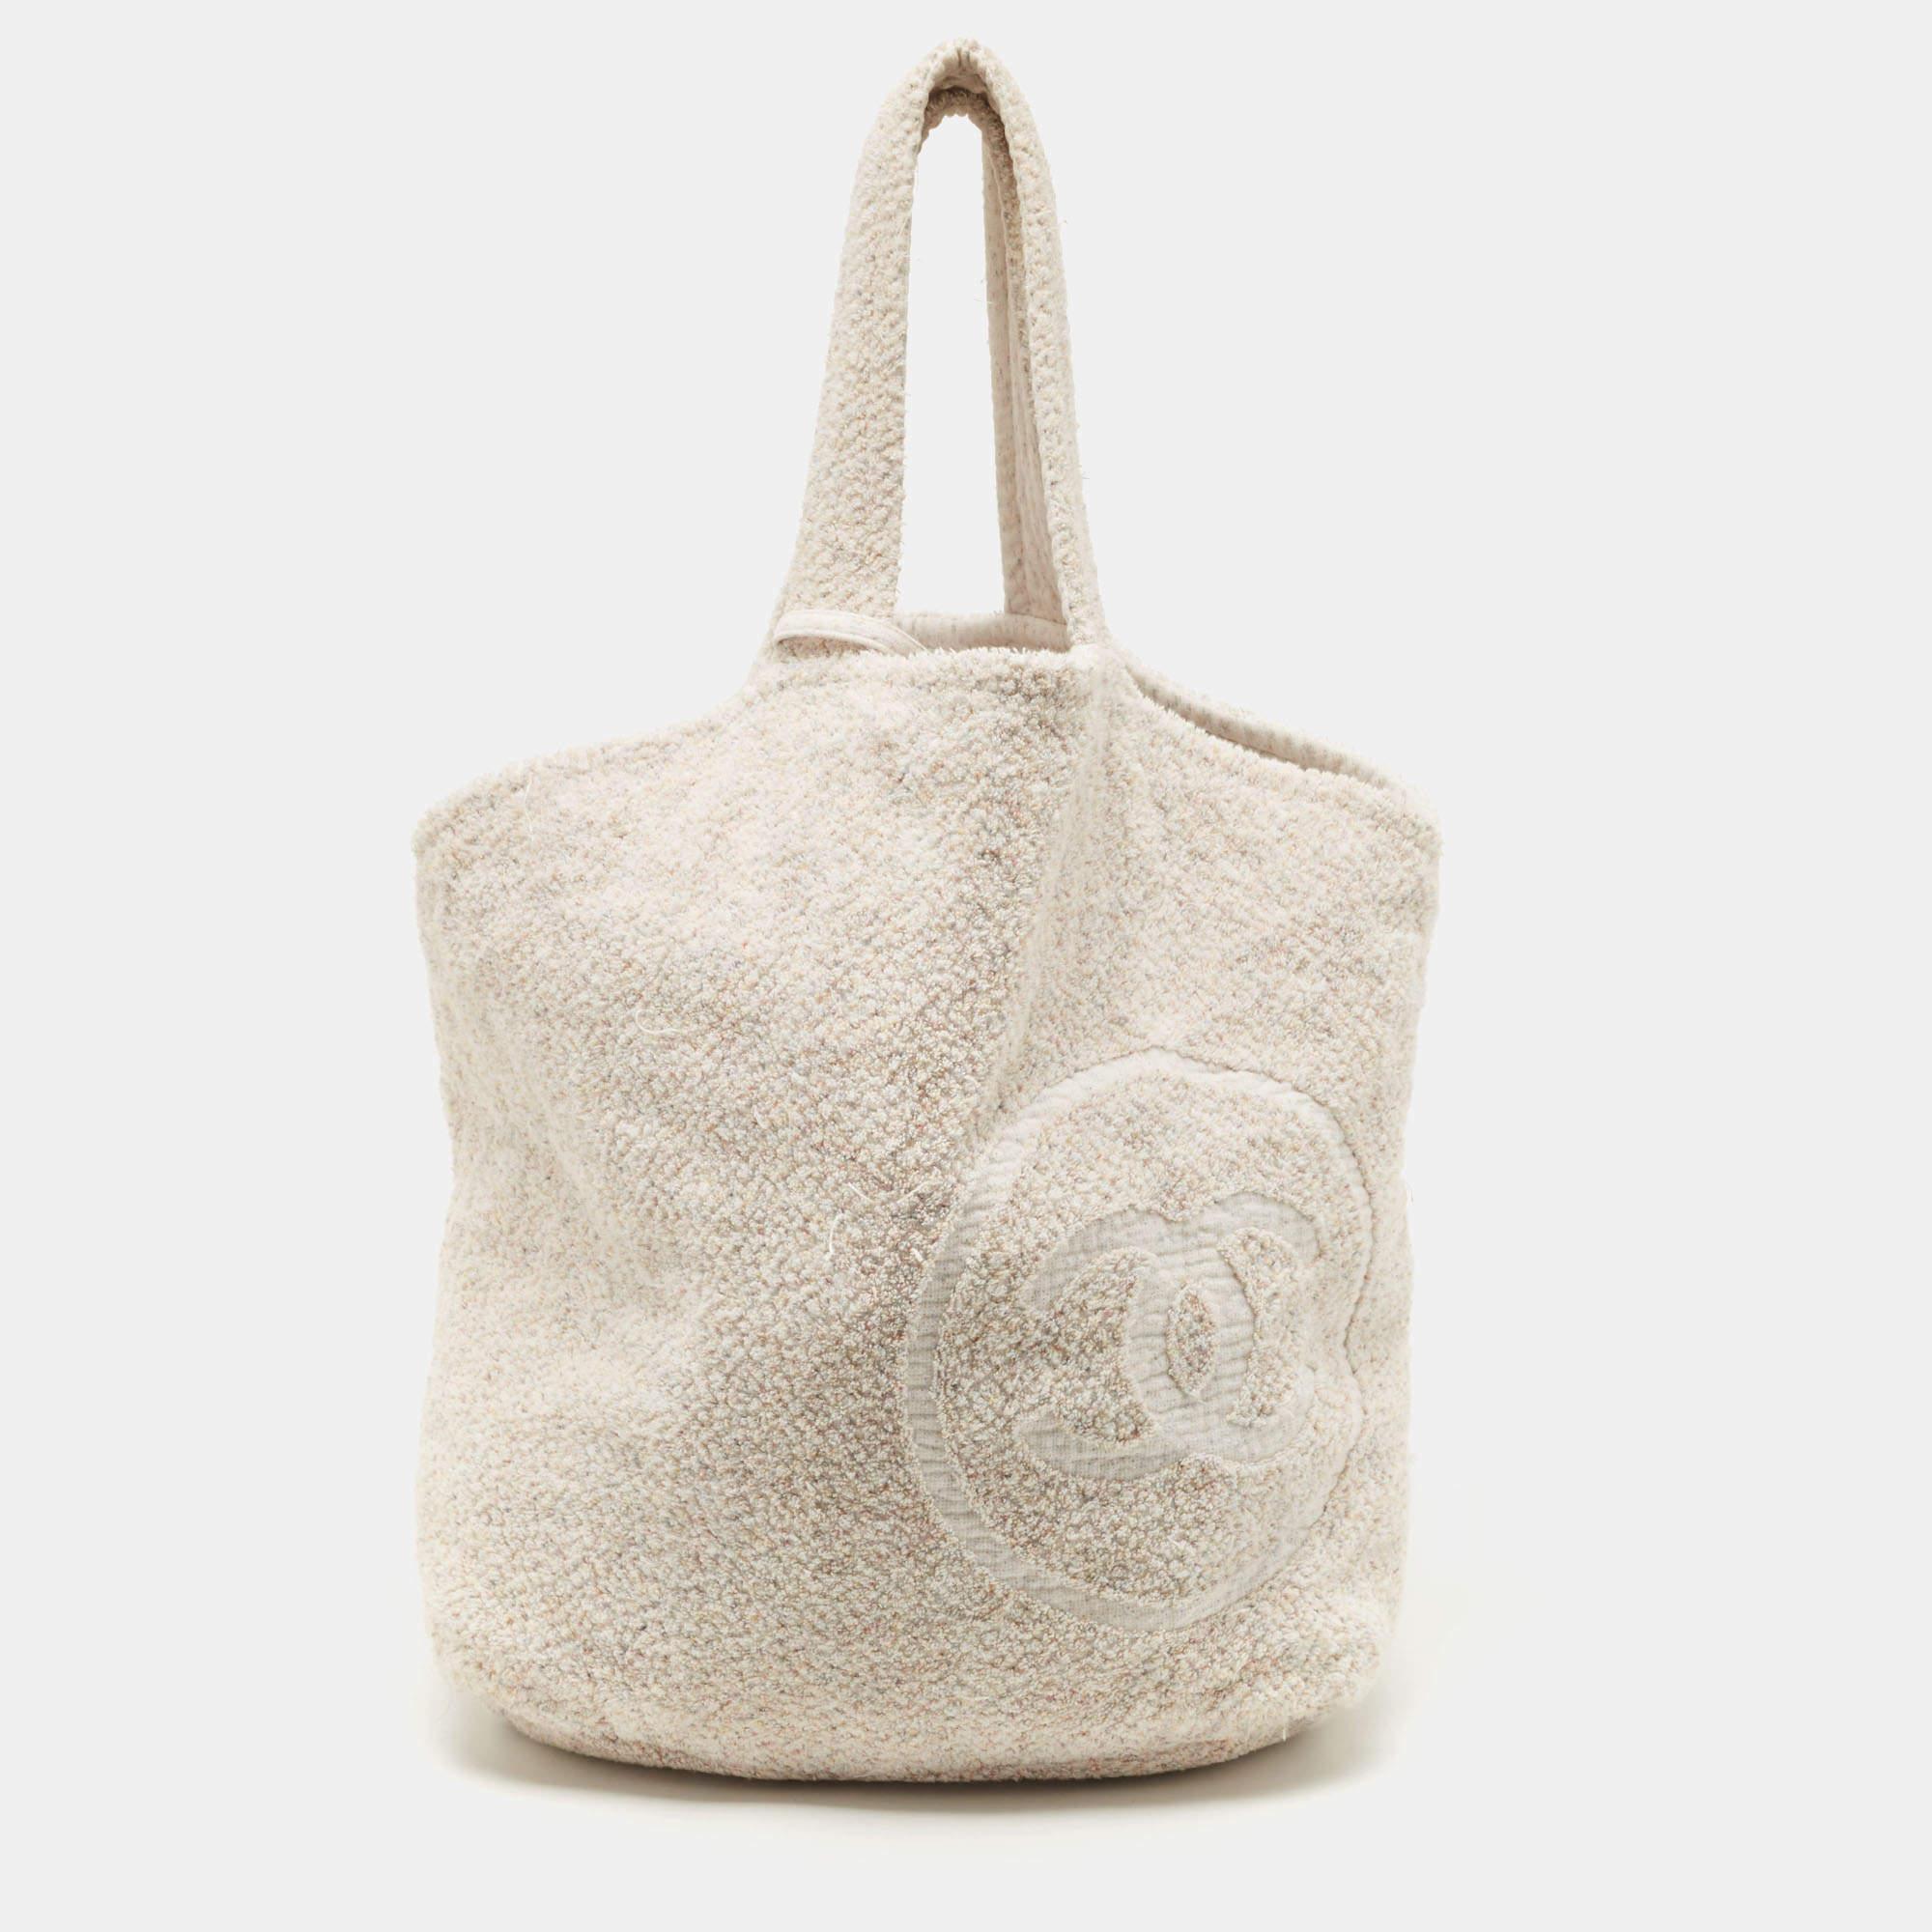 Chanel Beach Bag Towel Set - 4 For Sale on 1stDibs